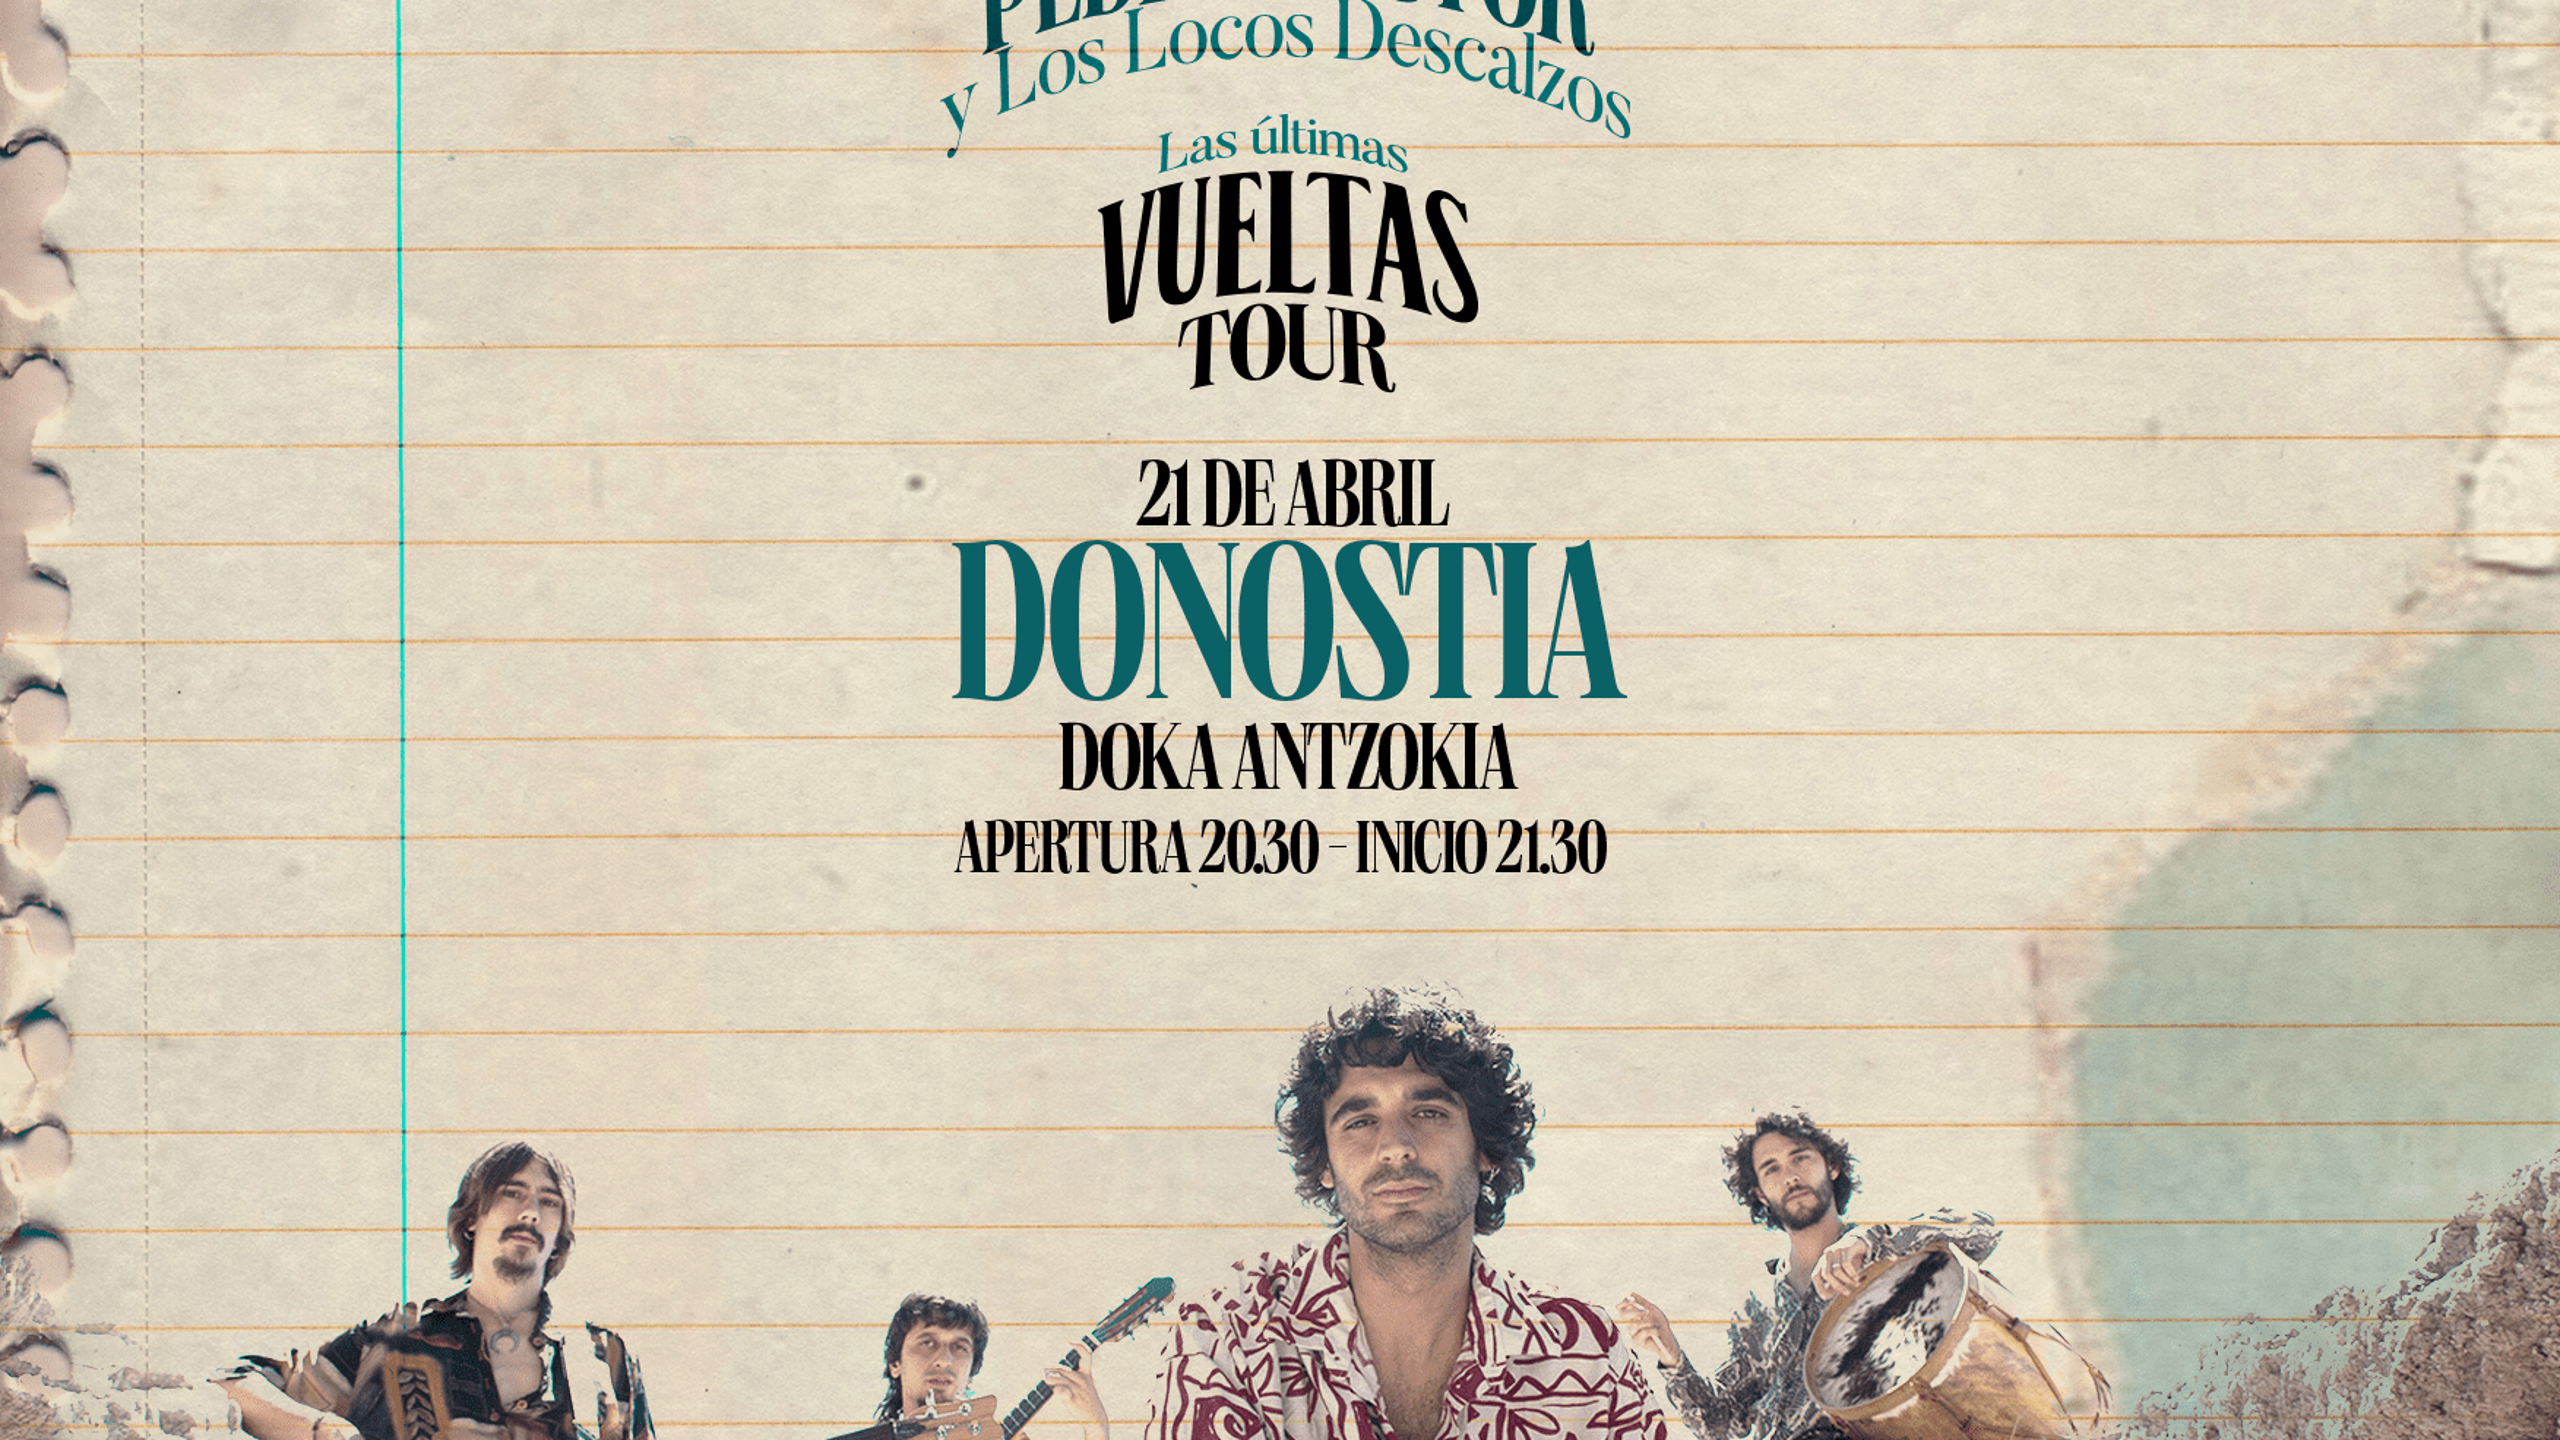 Fotografía promocional de Pedro Pastor Donostia ''Las Últimas Vueltas'' Tour